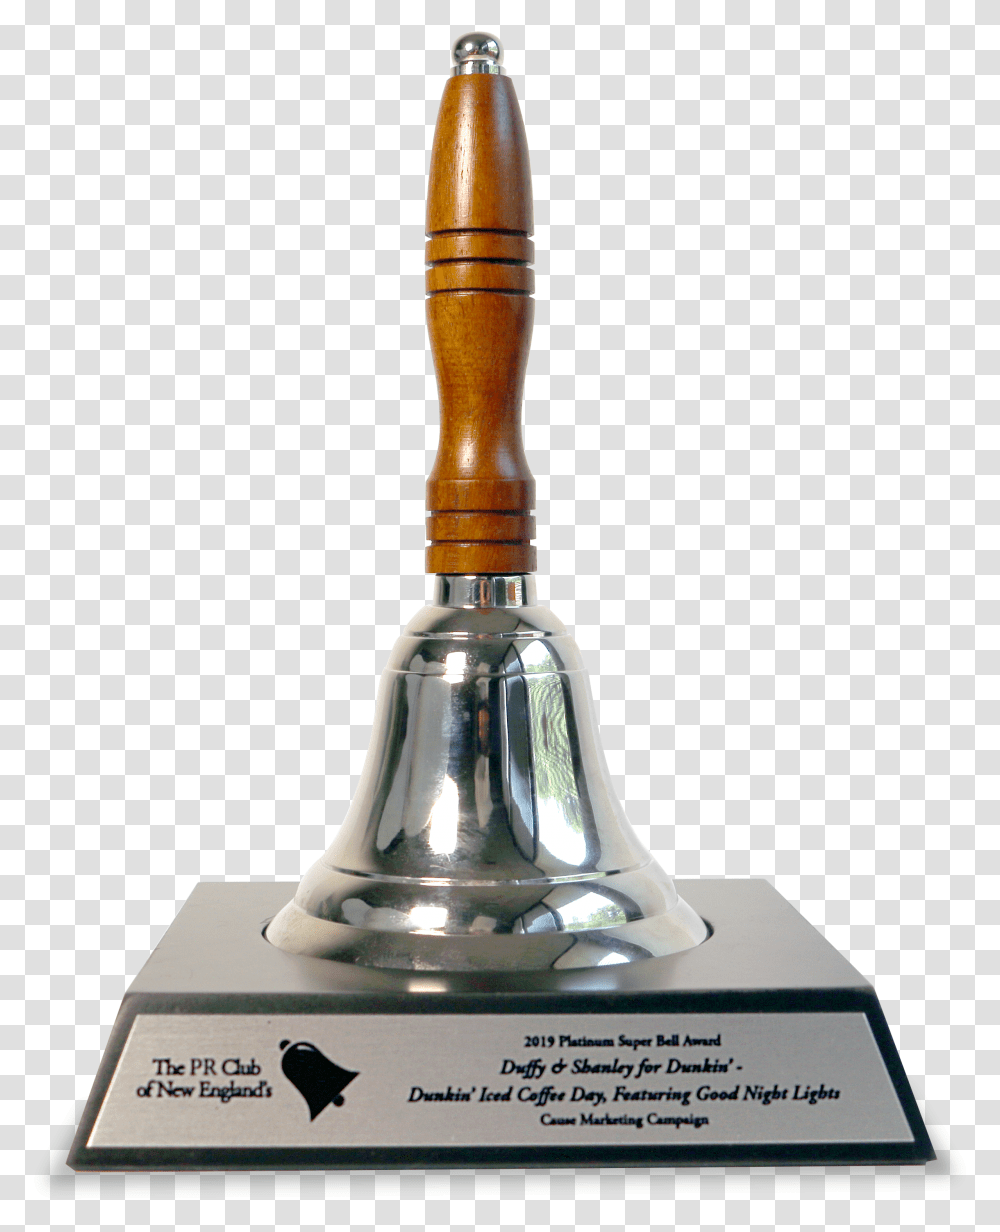 The Platinum Super Bell Award Trophy Transparent Png